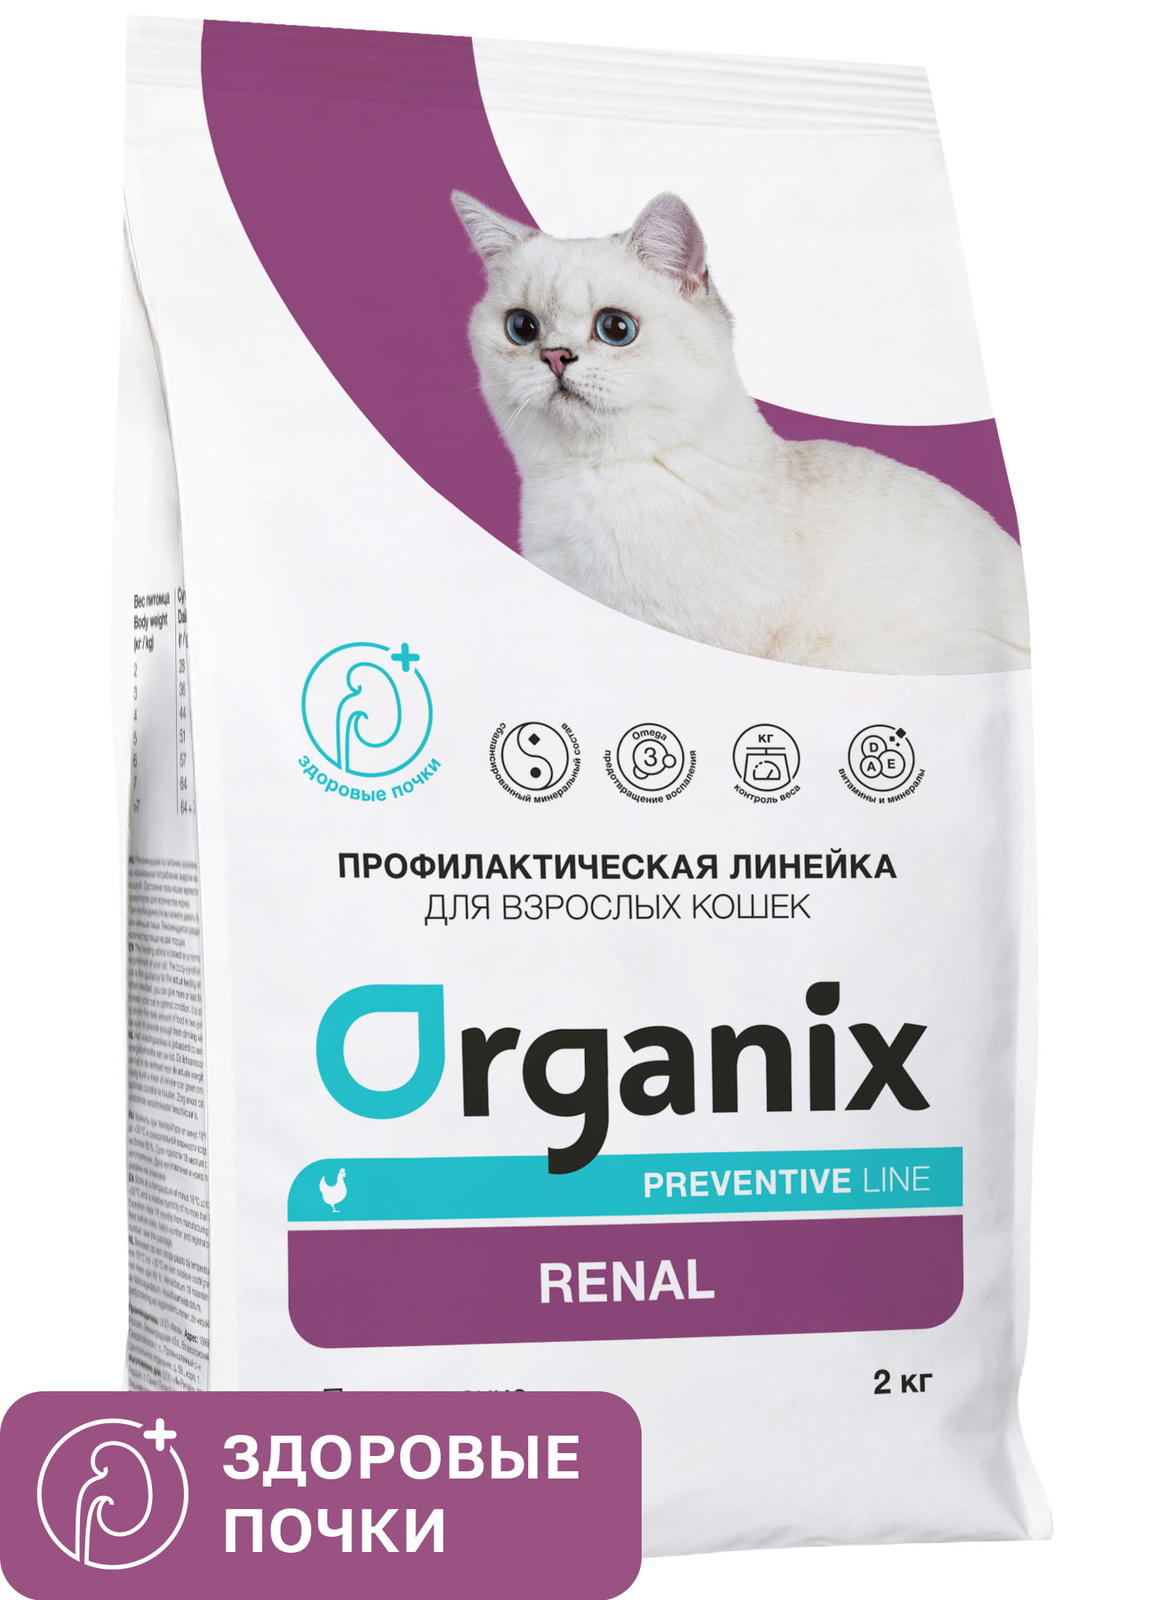 Organix Preventive Line Organix Preventive Line renal сухой корм для кошек Поддержание здоровья почек (600 г) organix preventive line organix preventive line hepatic сухой корм для собак поддержание здоровья печени 800 г